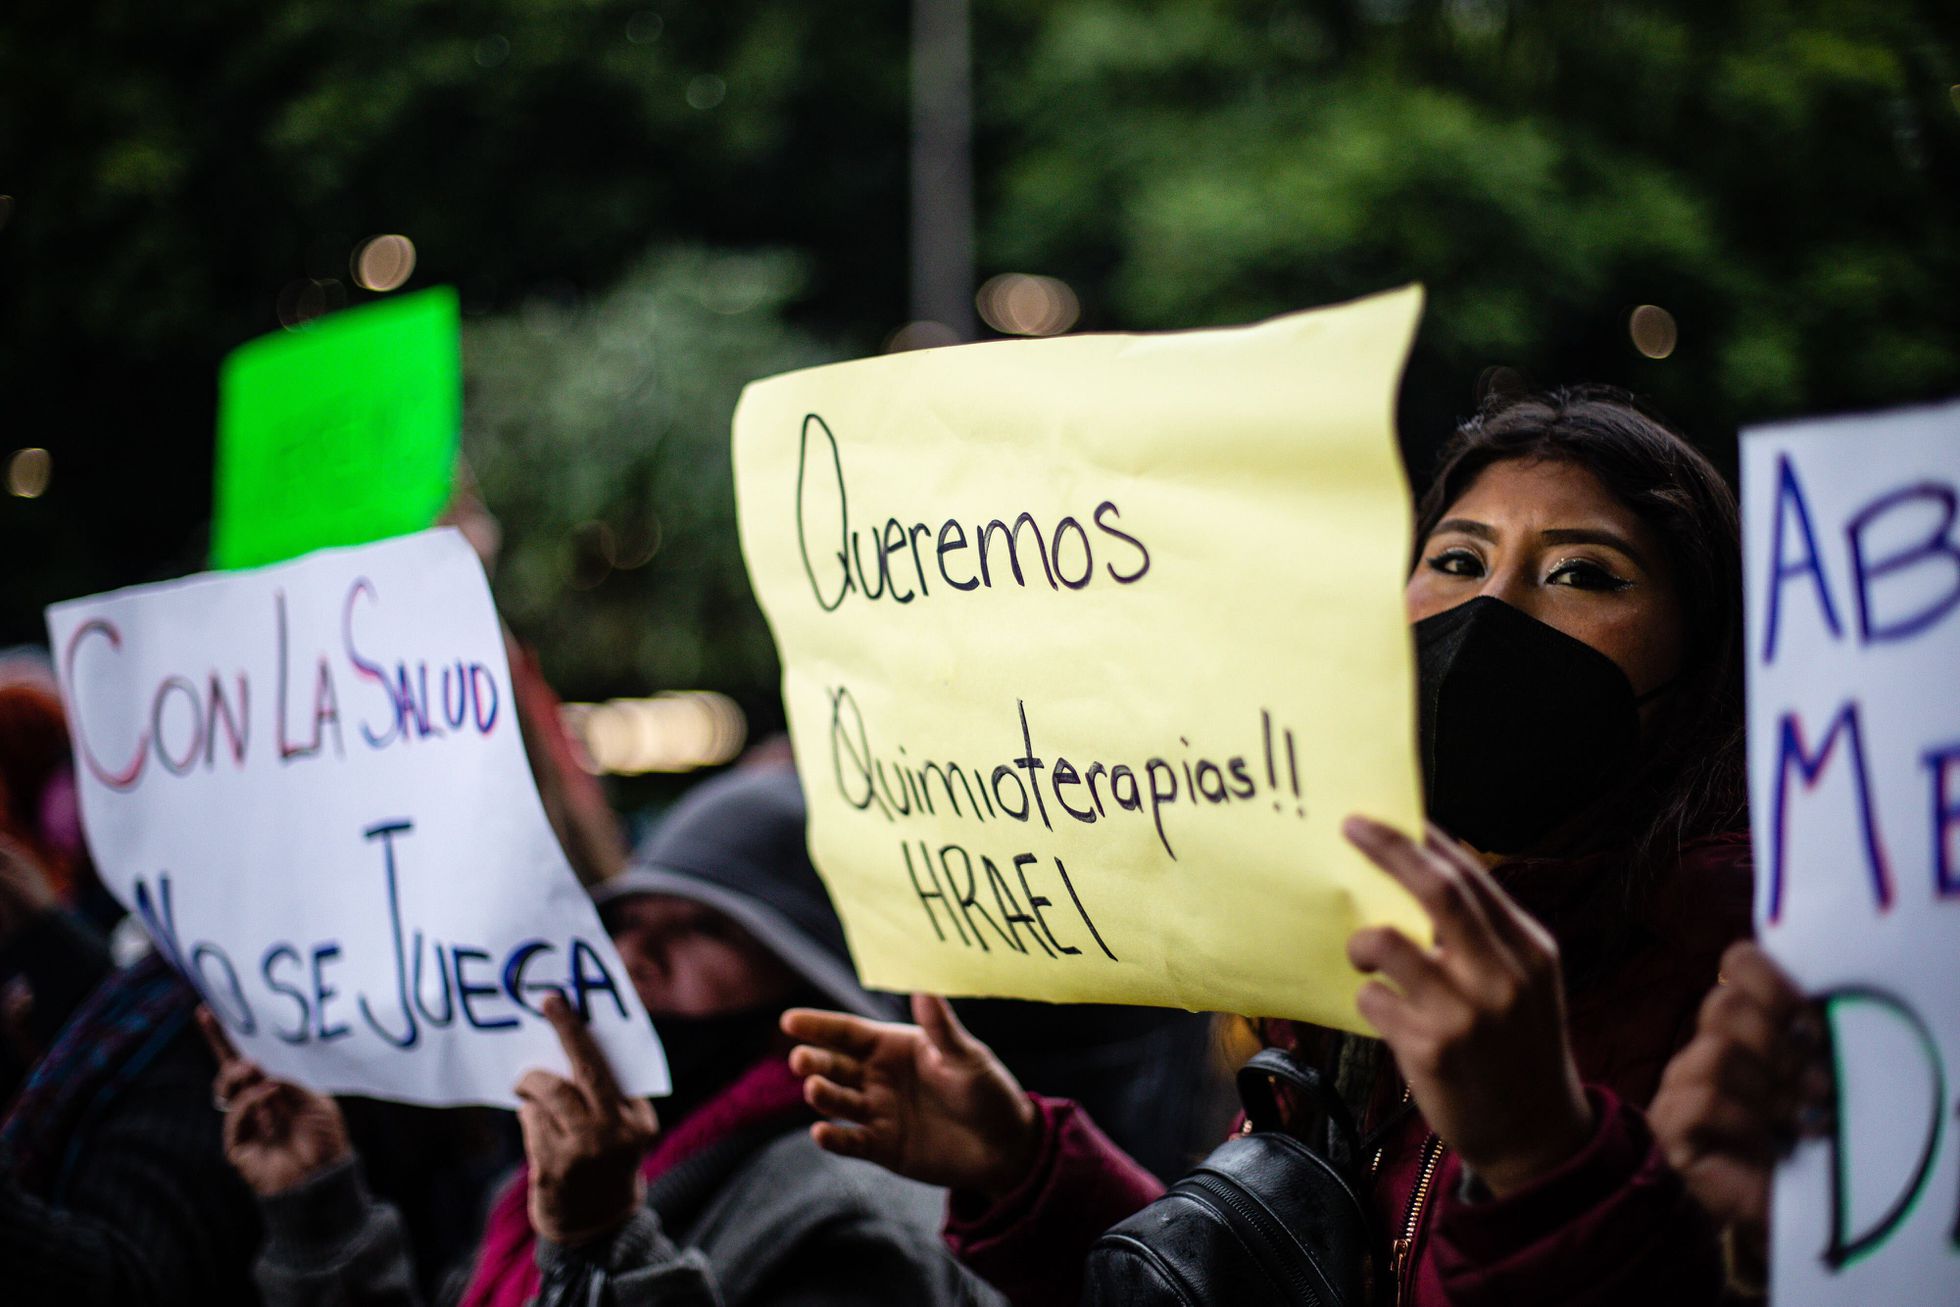 Un grupo de personas protesta contra el desabasto de quimioterapias, en el aeropuerto de Ciudad de México en junio. MANUEL VELÁSQUEZ (MANUEL VELÁSQUEZ/EL PAÍS)